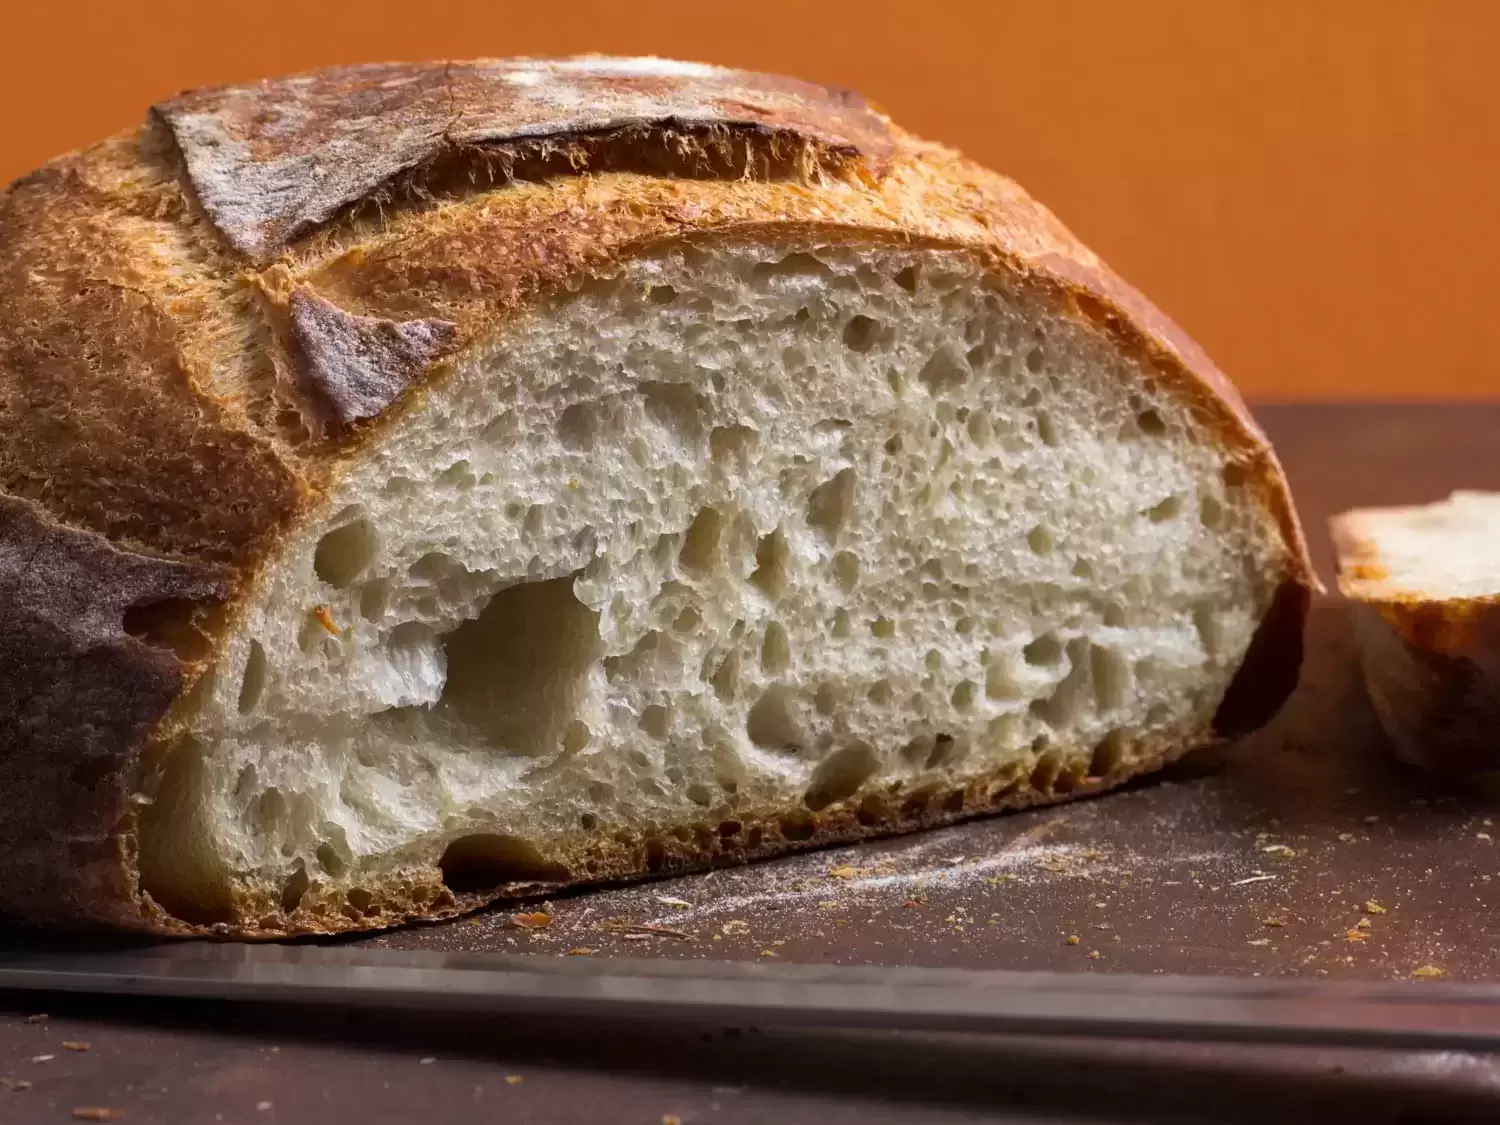 Duonos kepimas namuose sugrįžta: išsamus gidas, kaip išsikepti iš vos 3 ingredientų